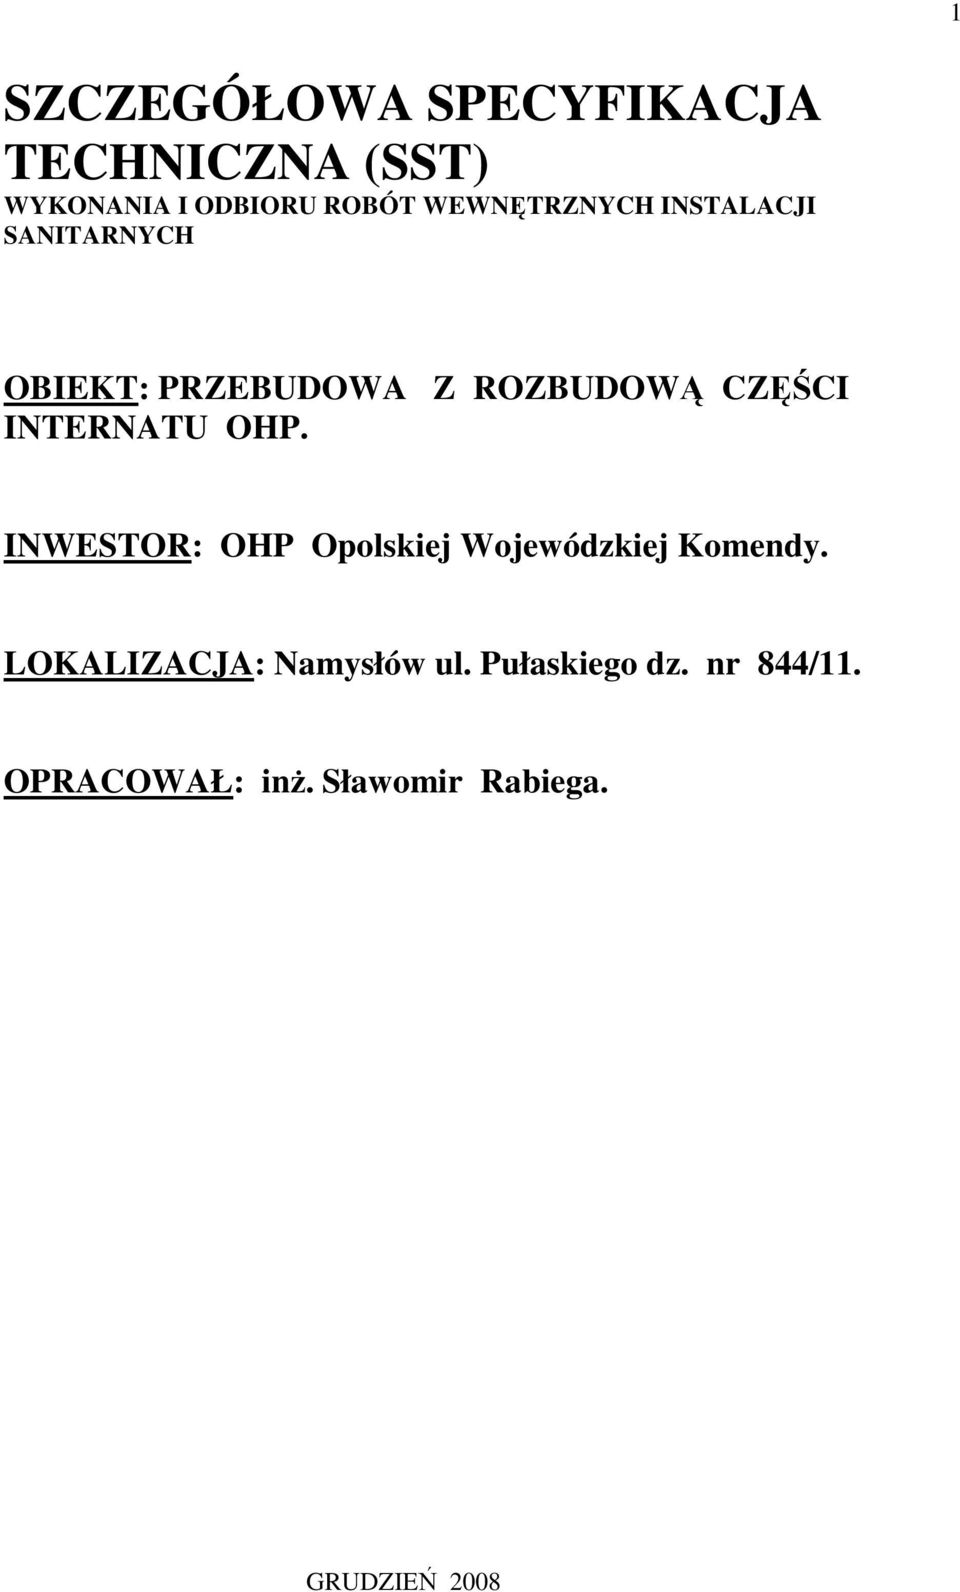 INTERNATU OHP. INWESTOR: OHP Opolskiej Wojewódzkiej Komendy.